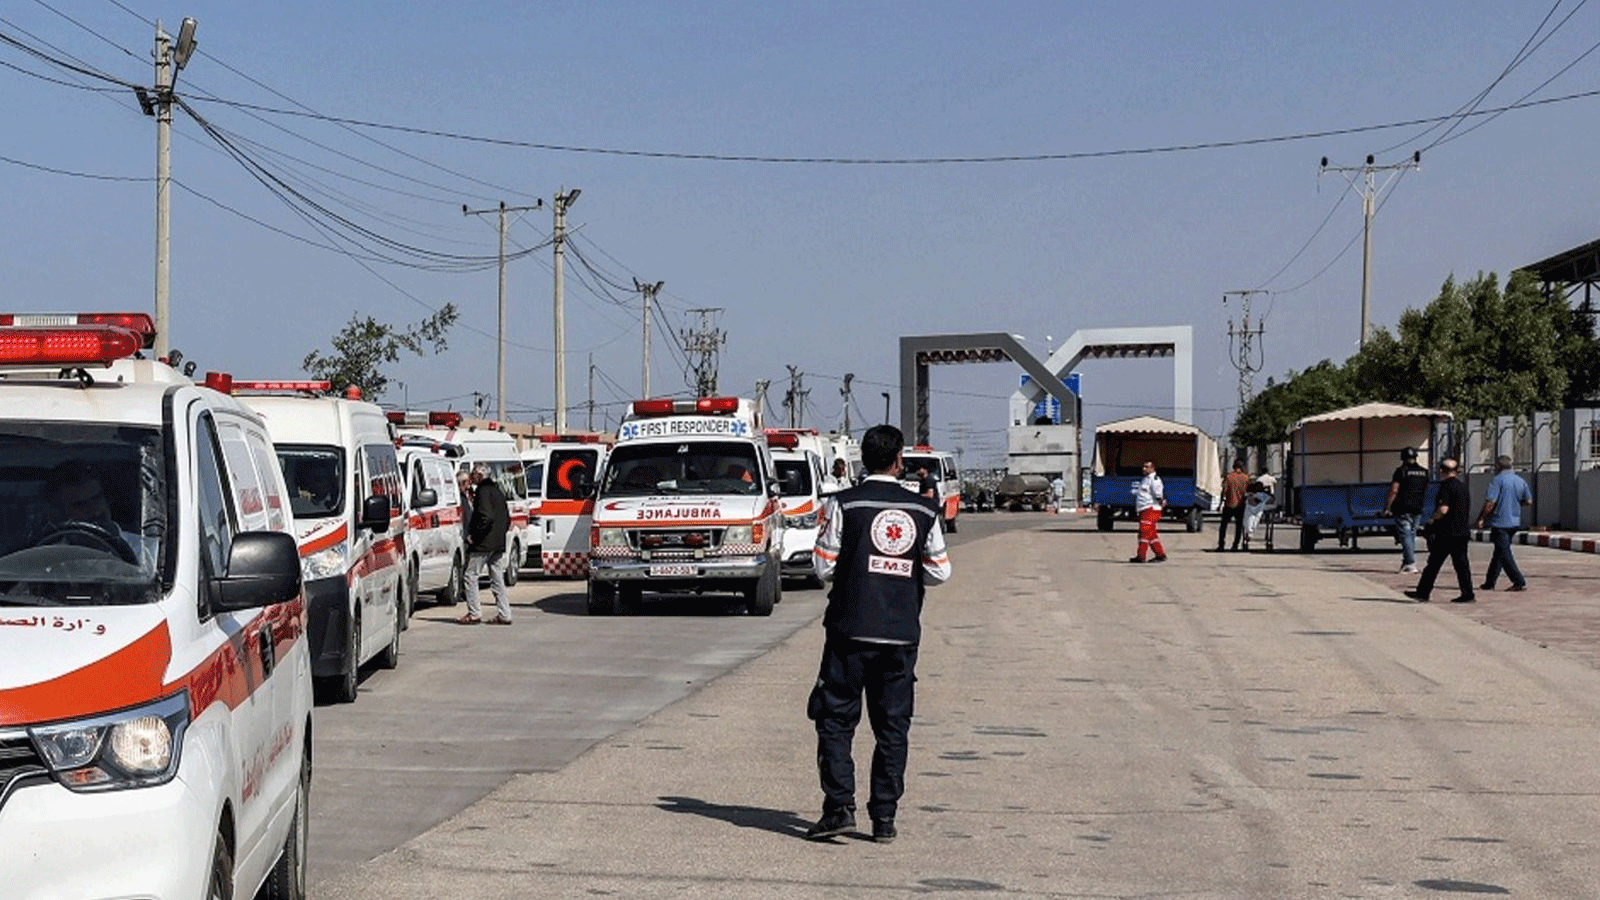 سيارات الإسعاف التابعة لوزارة الصحة الفلسطينية تعبر البوابة للدخول إلى معبر رفح الحدودي في جنوب قطاع غزة قبل العبور إلى مصر